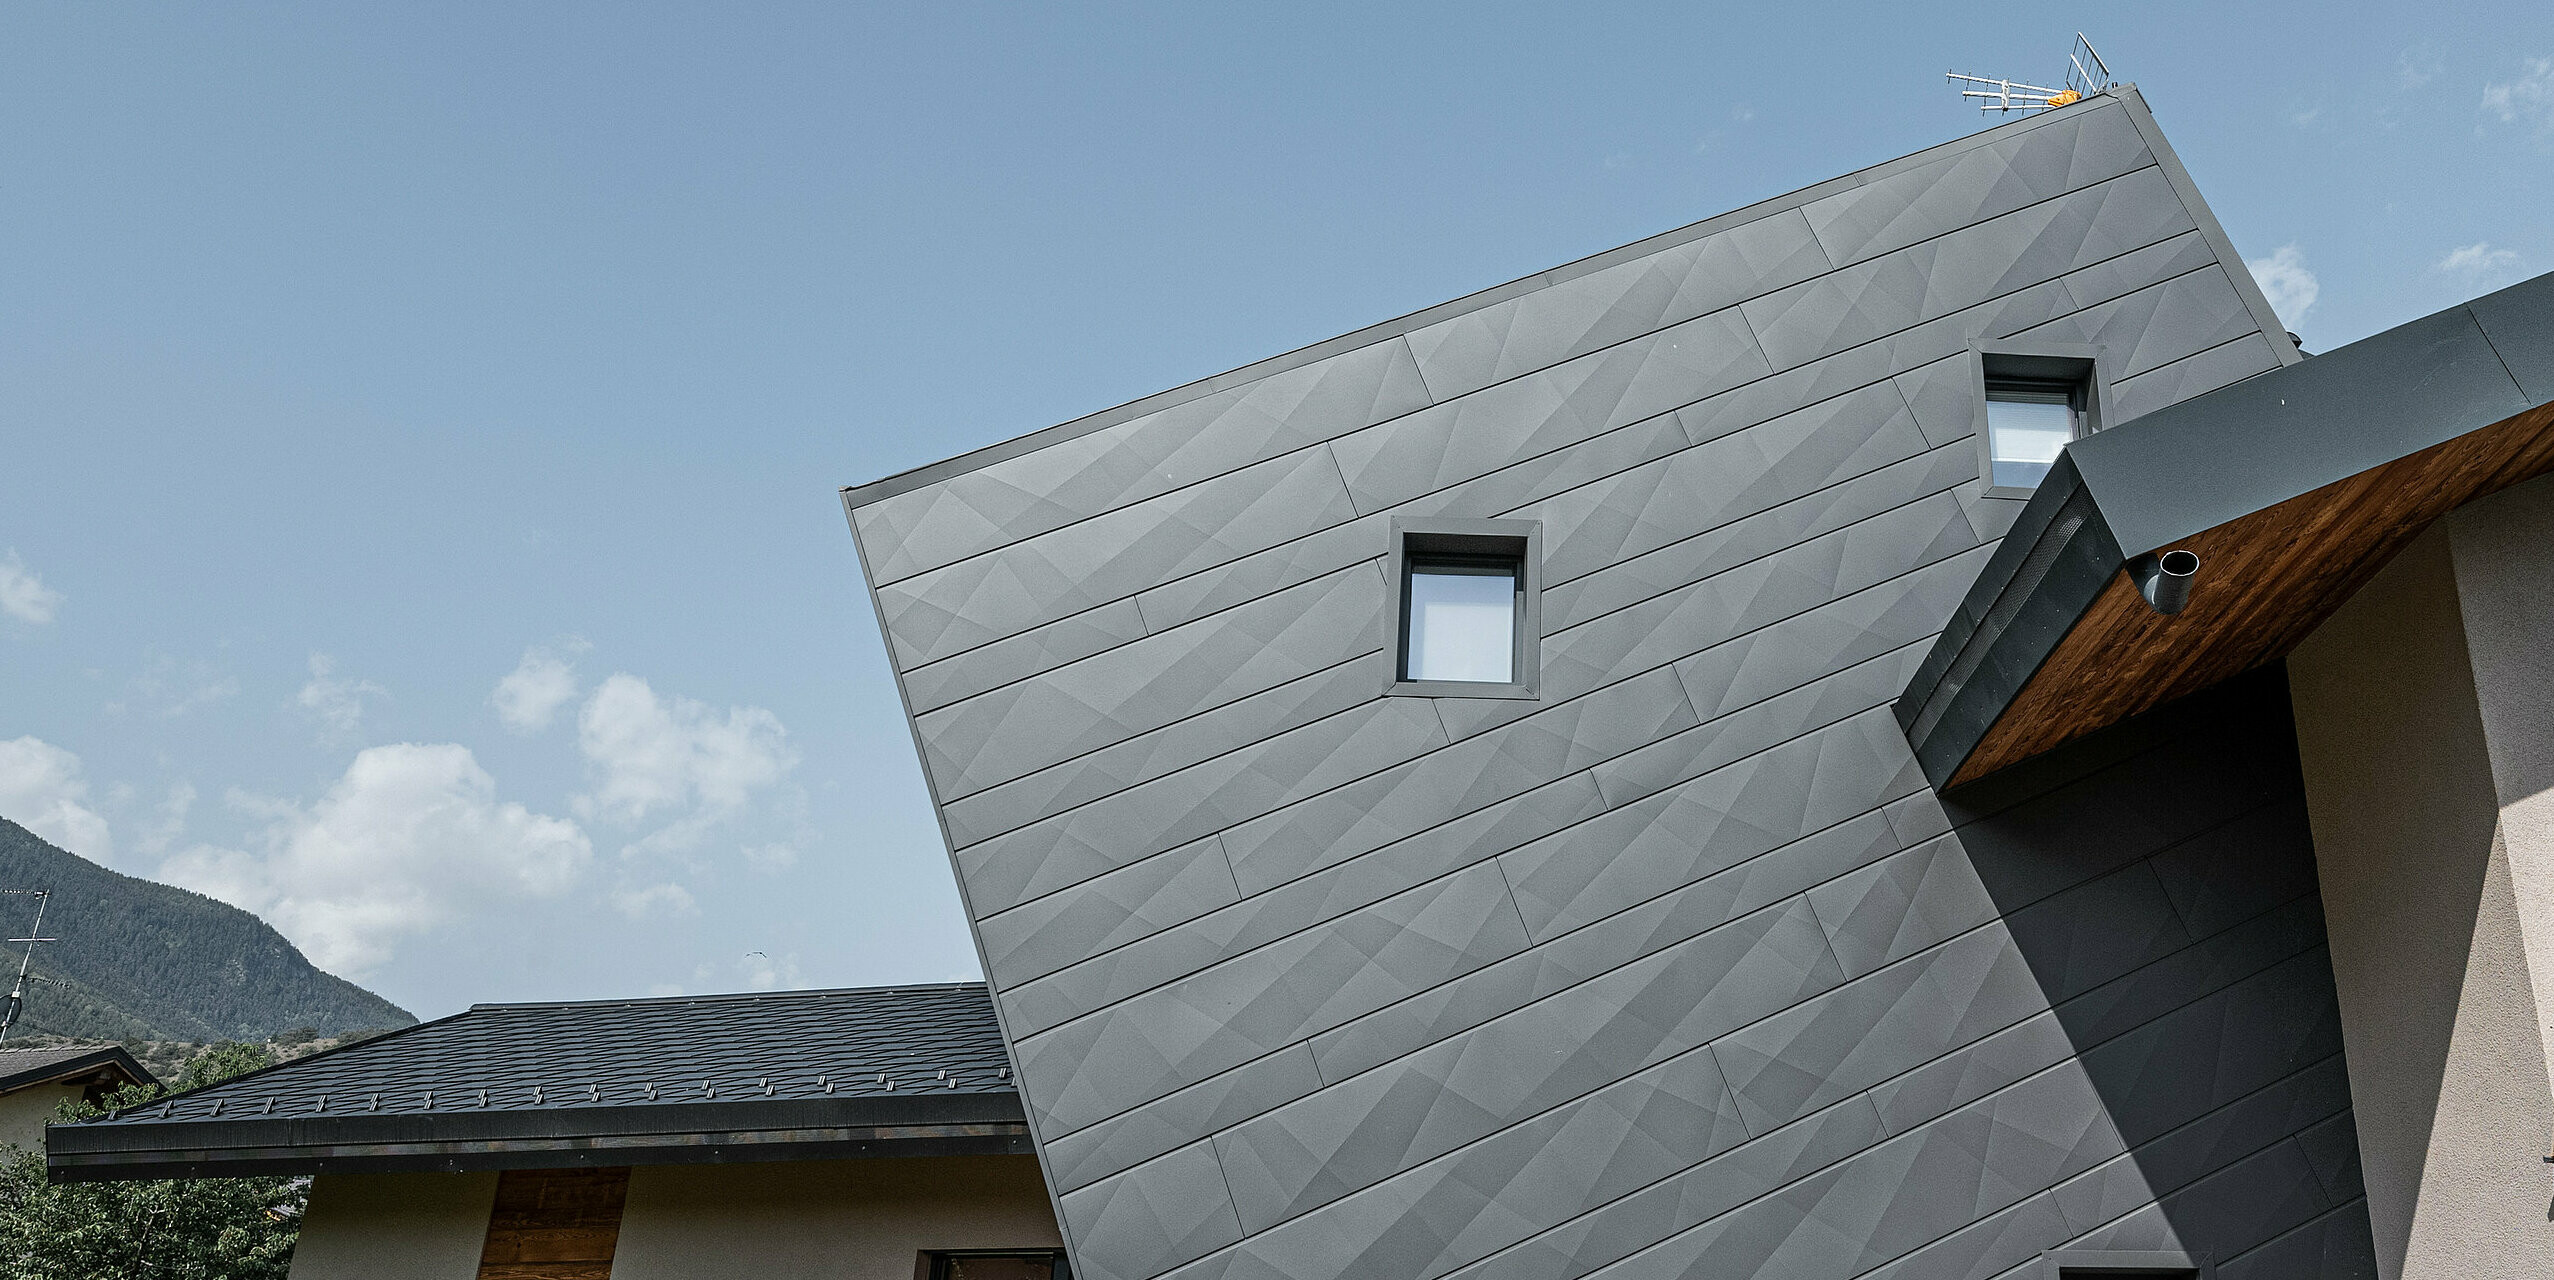 Die Villa Tia in Gressan, Italien, zeigt eine moderne Fassadengestaltung mit PREFA Siding.X in P.10 Dunkelgrau. Die dynamische Anordnung der Paneele erzeugt ein dreidimensionales Erscheinungsbild, das durch den Kontrast zu den natürlichen Holzelementen und der umgebenden Landschaft hervorgehoben wird. Diese innovative Sonderlösung der schrägen Siding.X Fassadenpaneele steht für ein zeitgemäßes und langlebiges Design.